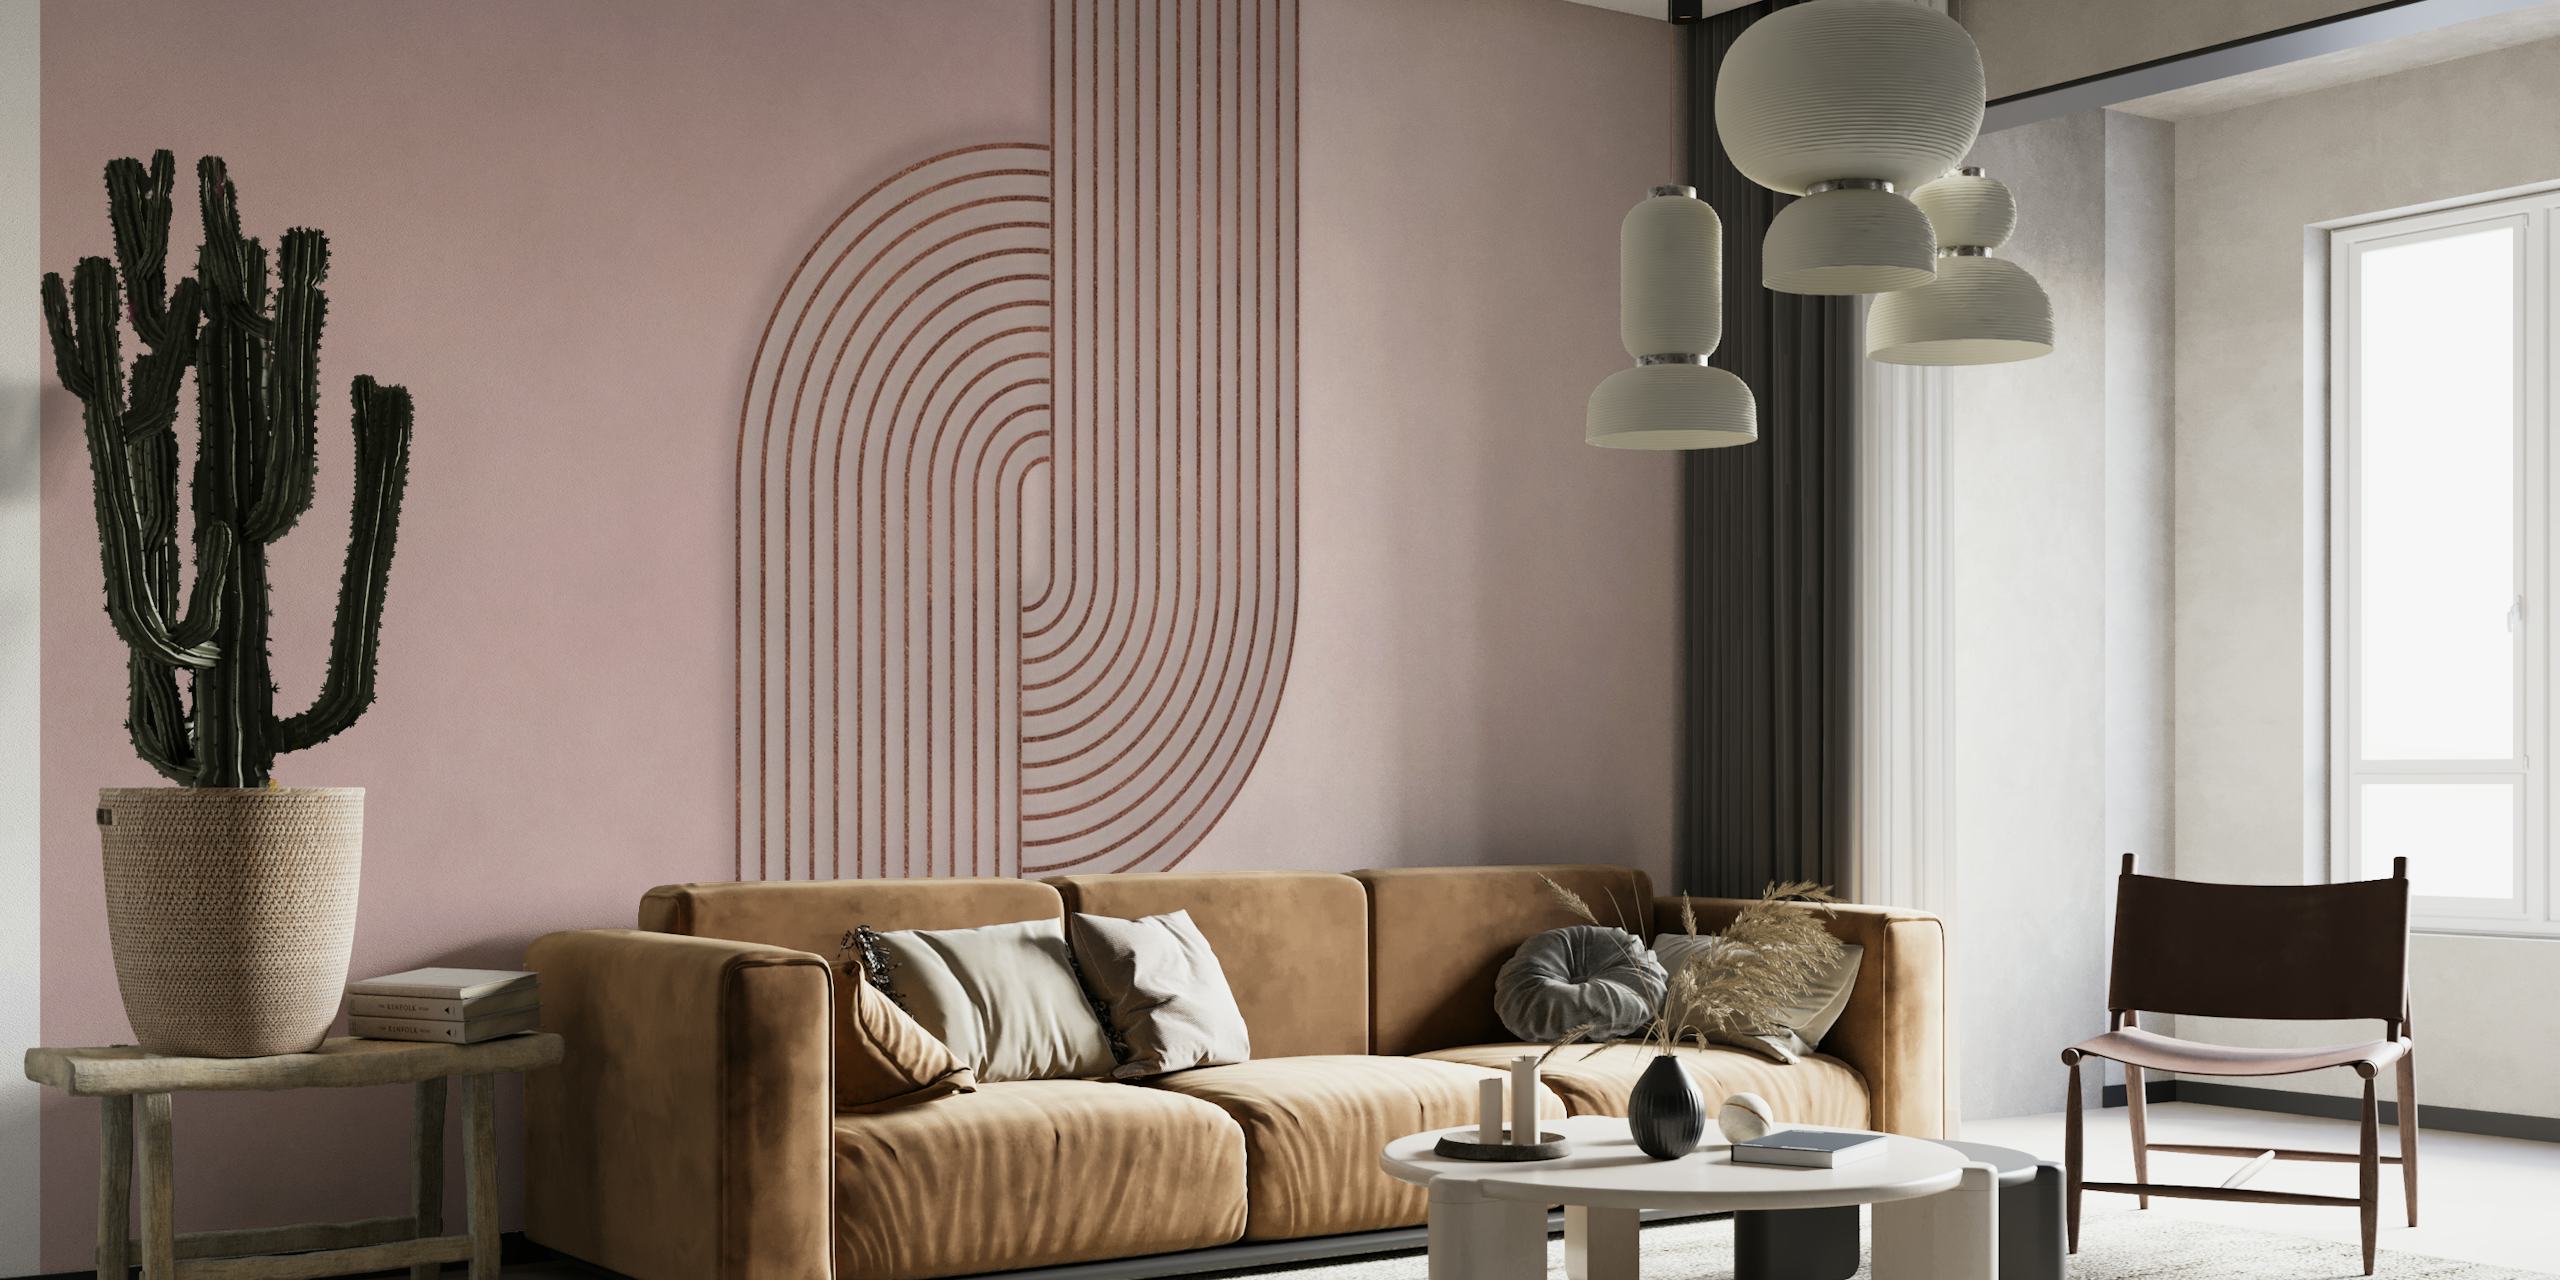 Bauhaus Twist Mid Century Modern Art Rosegold Blush Pink papel pintado